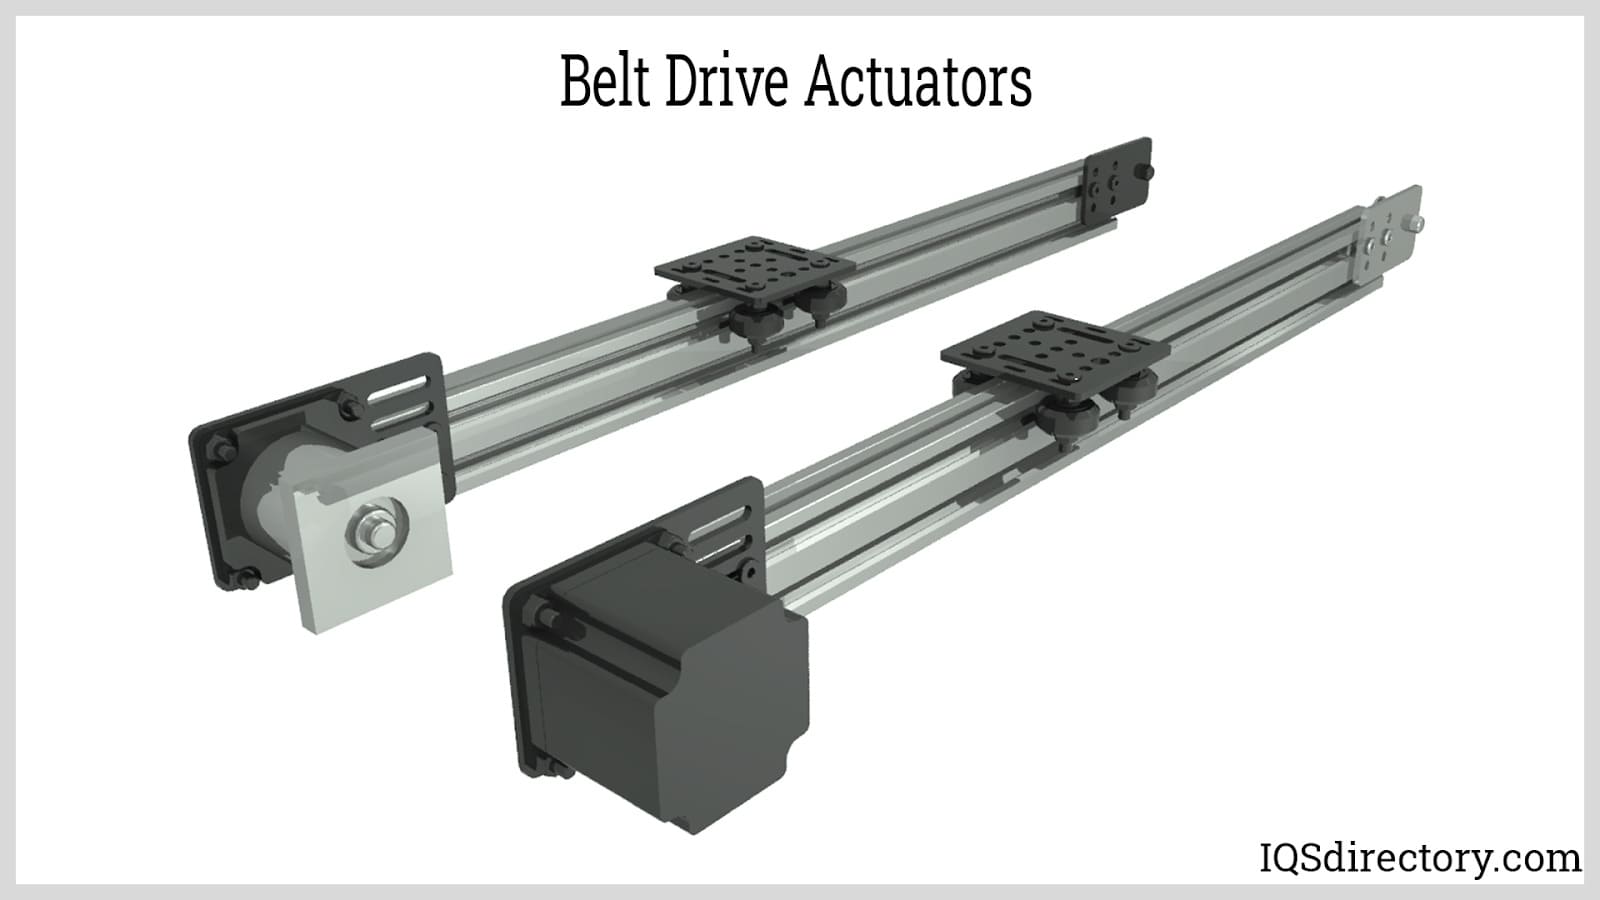 Belt Drive Actuators